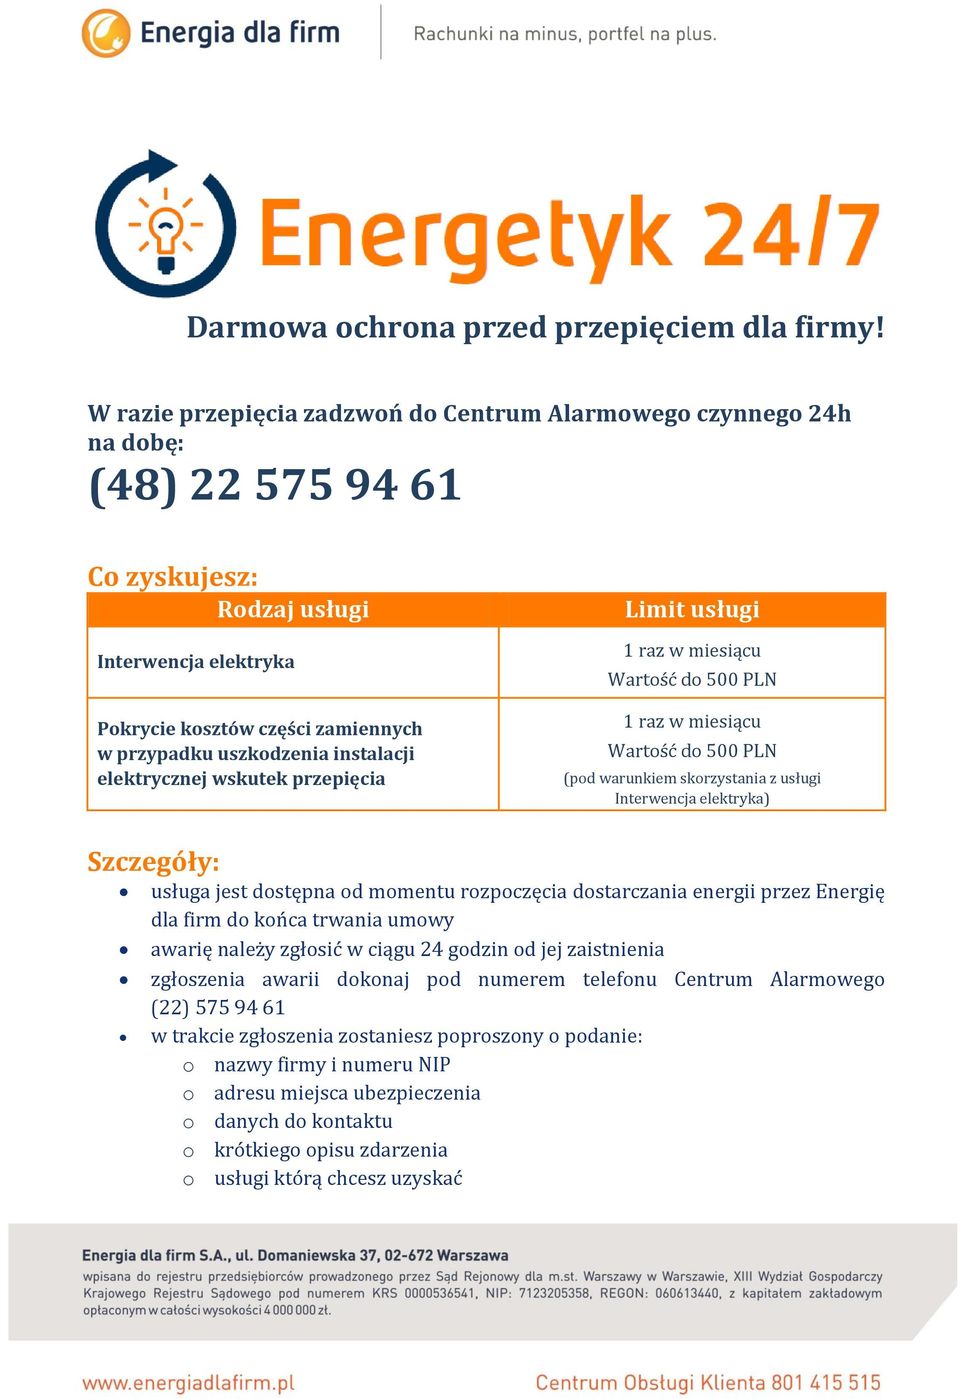 instalacji elektrycznej wskutek przepięcia Limit usługi 1 raz w miesiącu Wartość do 500 PLN 1 raz w miesiącu Wartość do 500 PLN (pod warunkiem skorzystania z usługi Interwencja elektryka) Szczegóły: